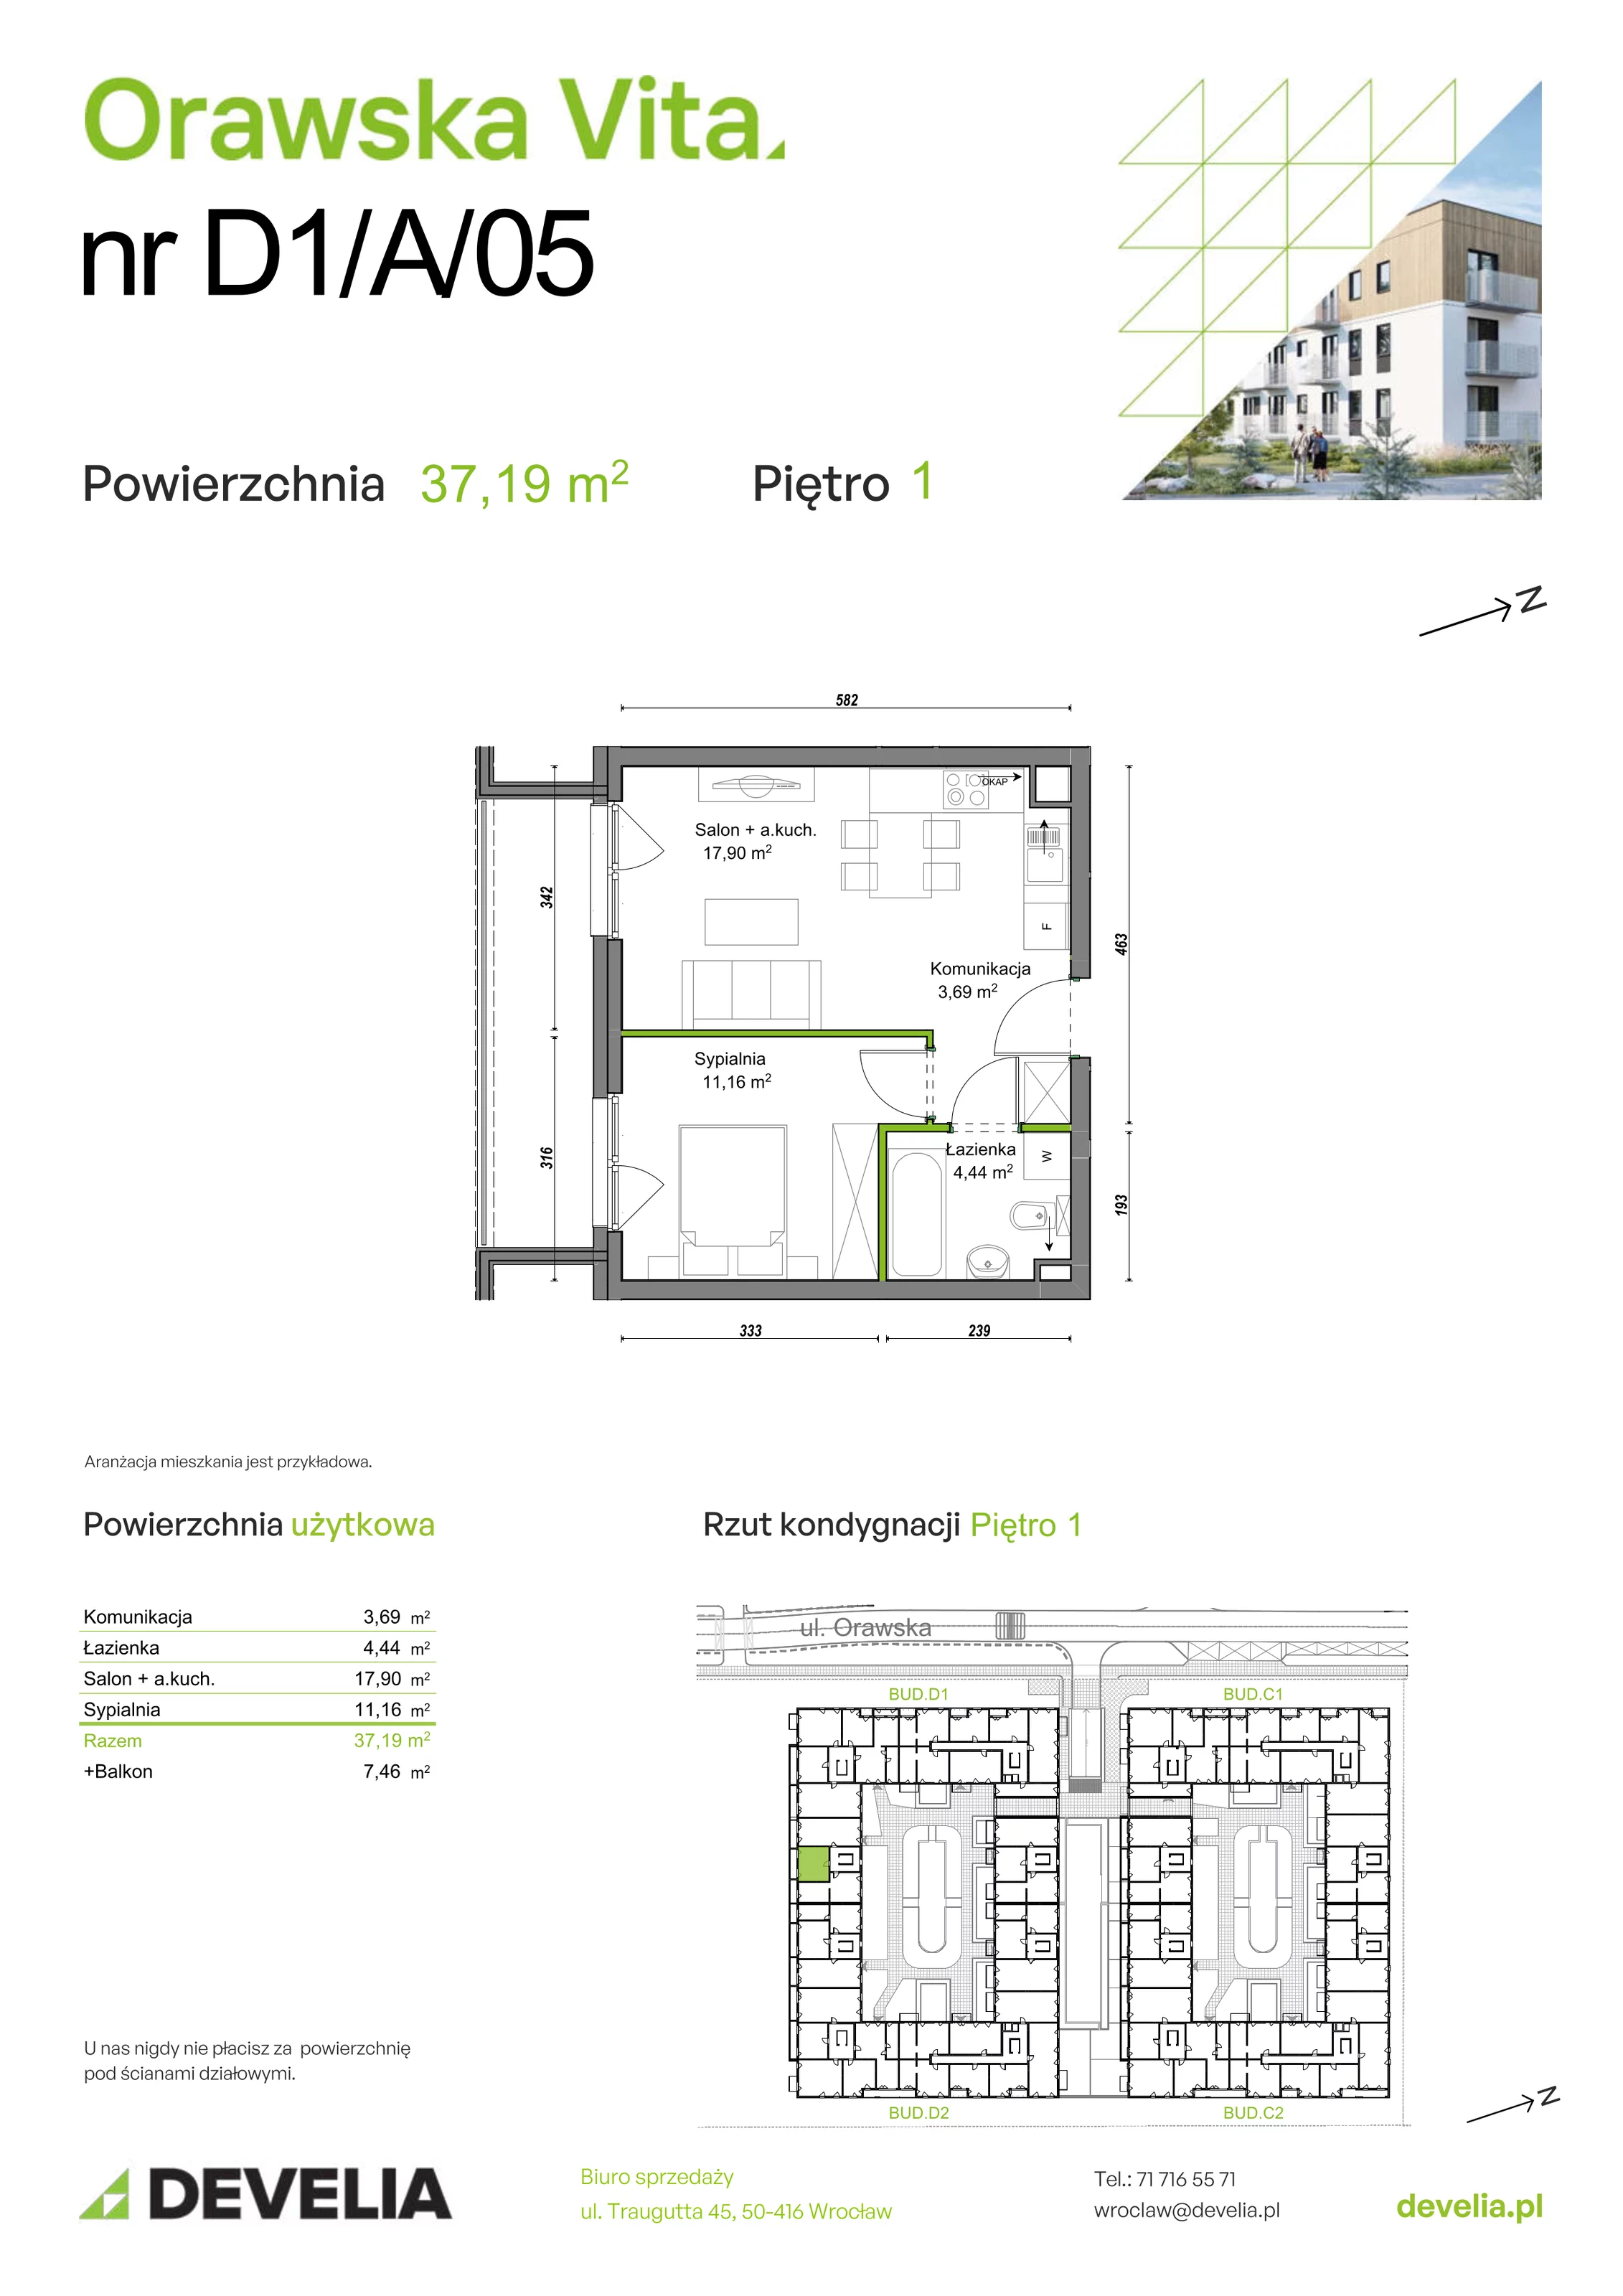 Mieszkanie 37,19 m², piętro 1, oferta nr D1/A/05, Orawska Vita, Wrocław, Ołtaszyn, Krzyki, ul. Orawska 73